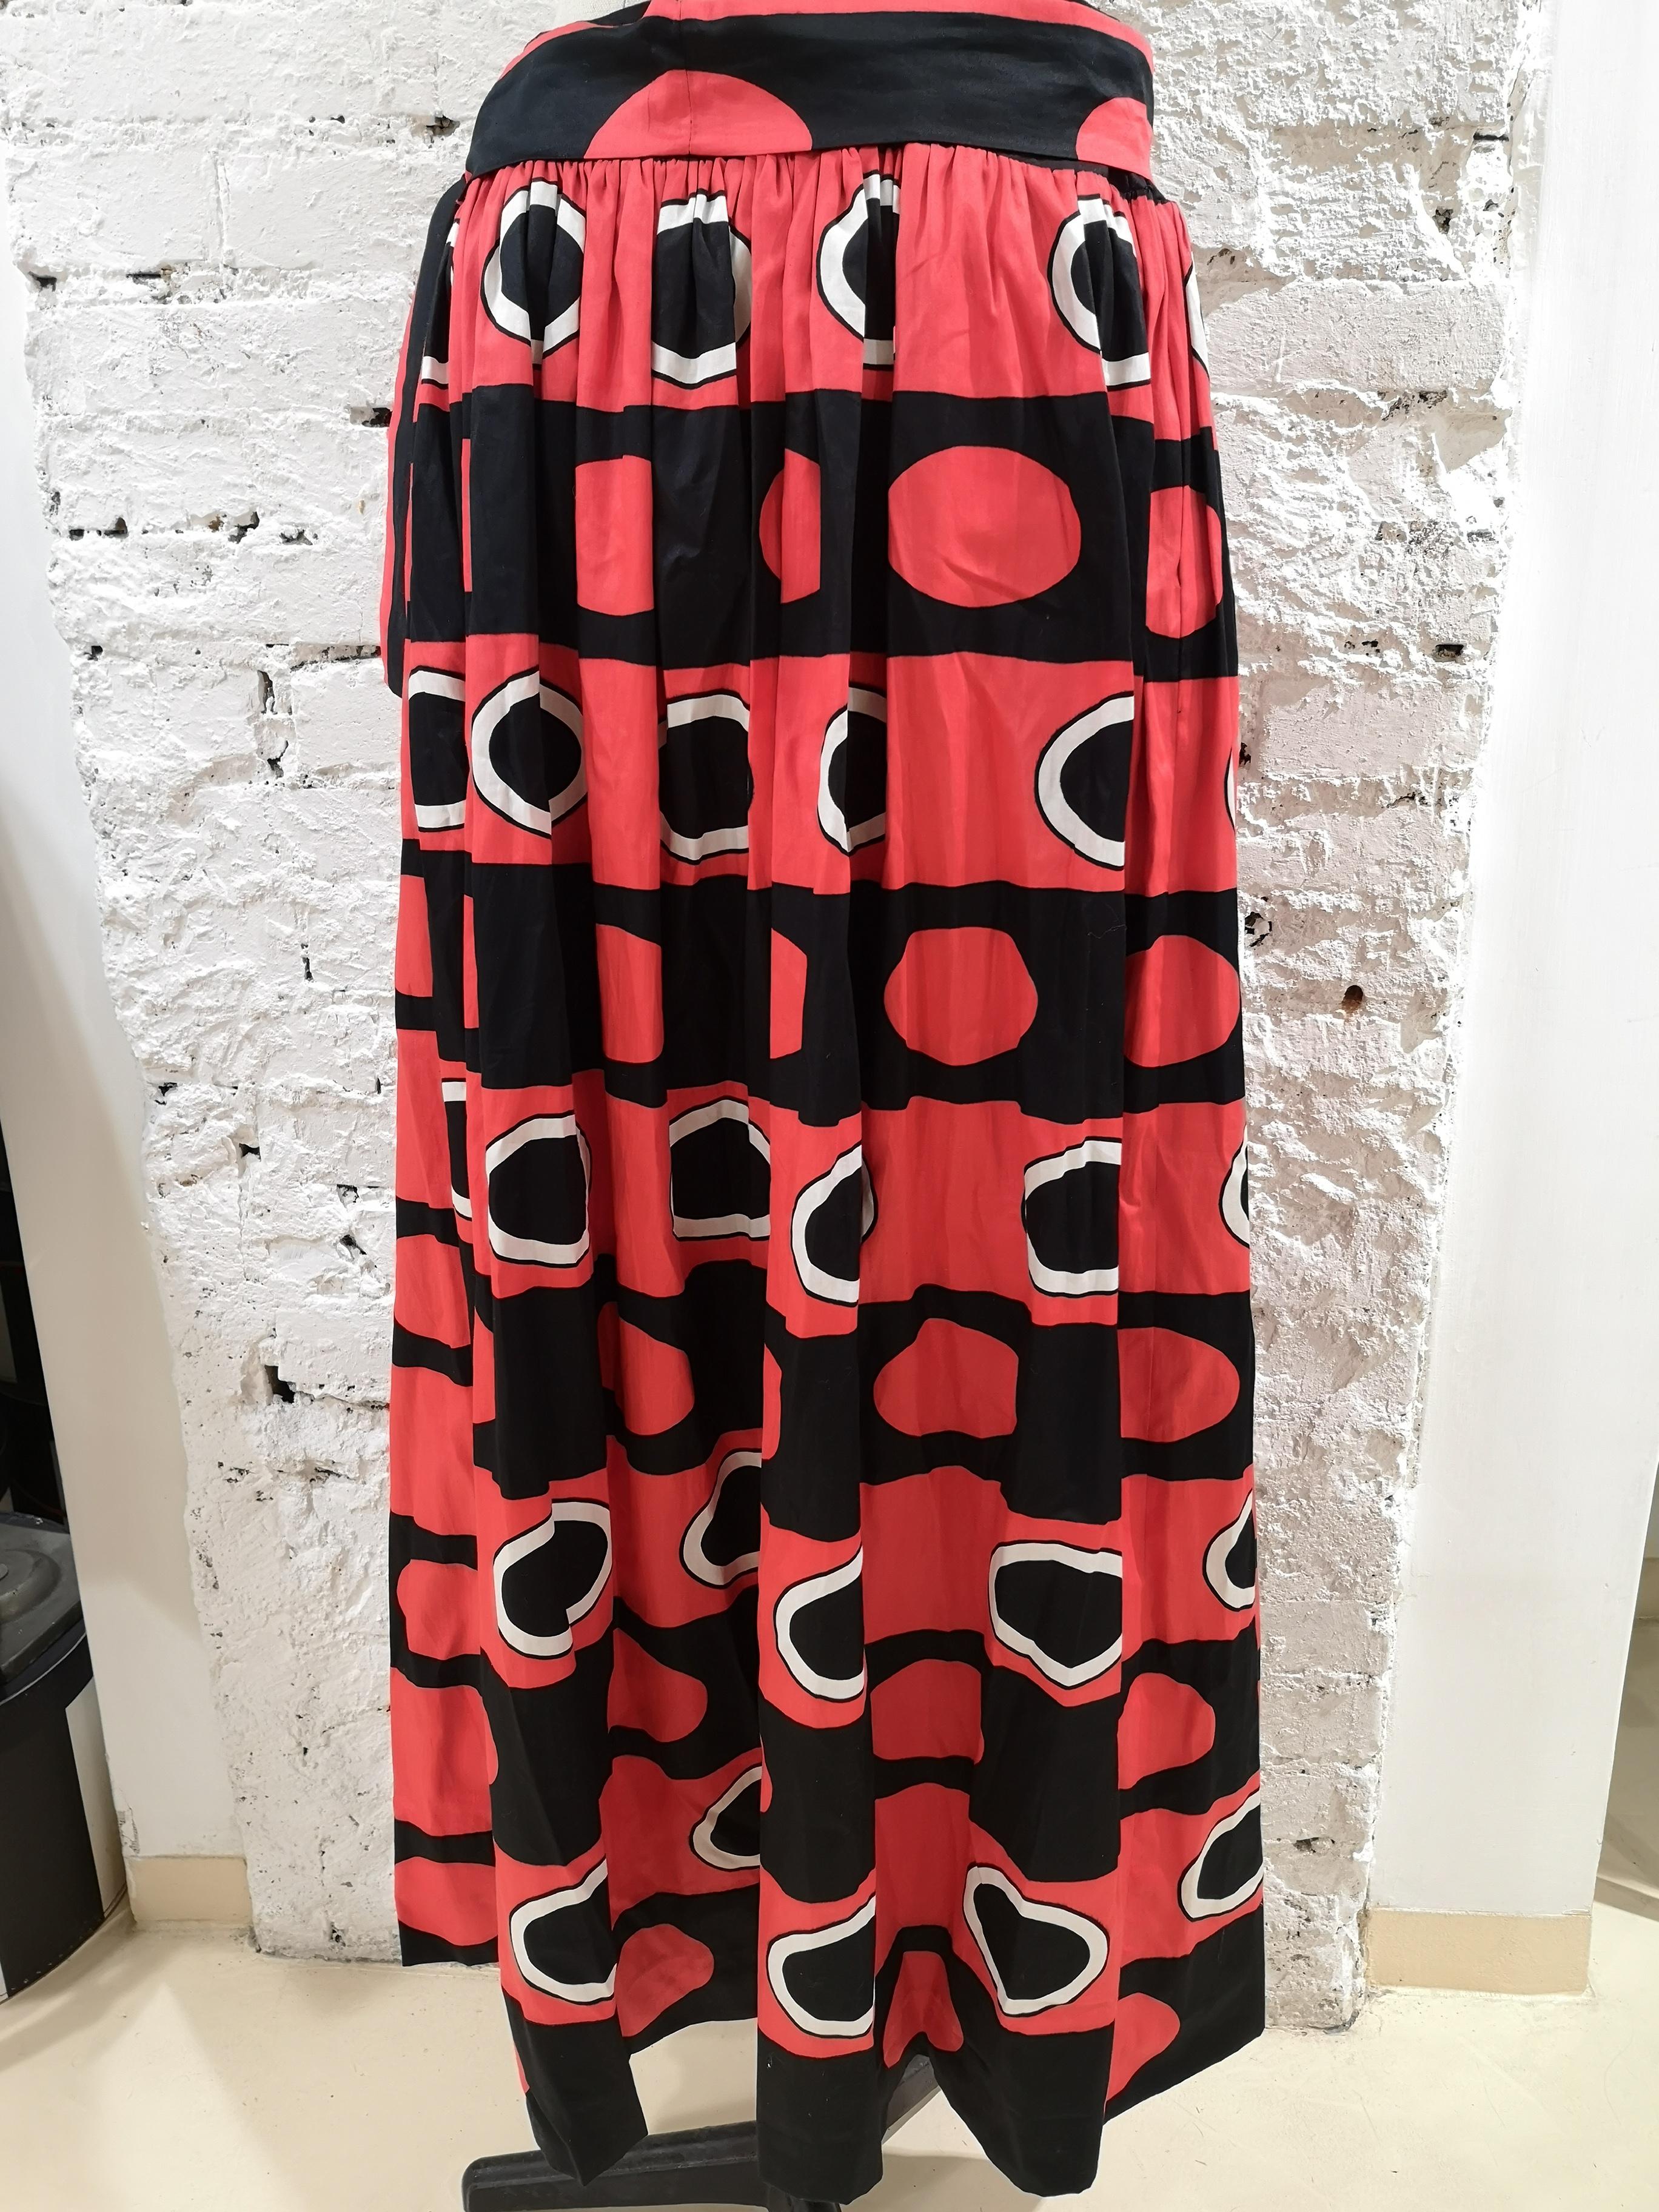 Yves Saint Laurent Rive Gauche black red white long Skirt 2